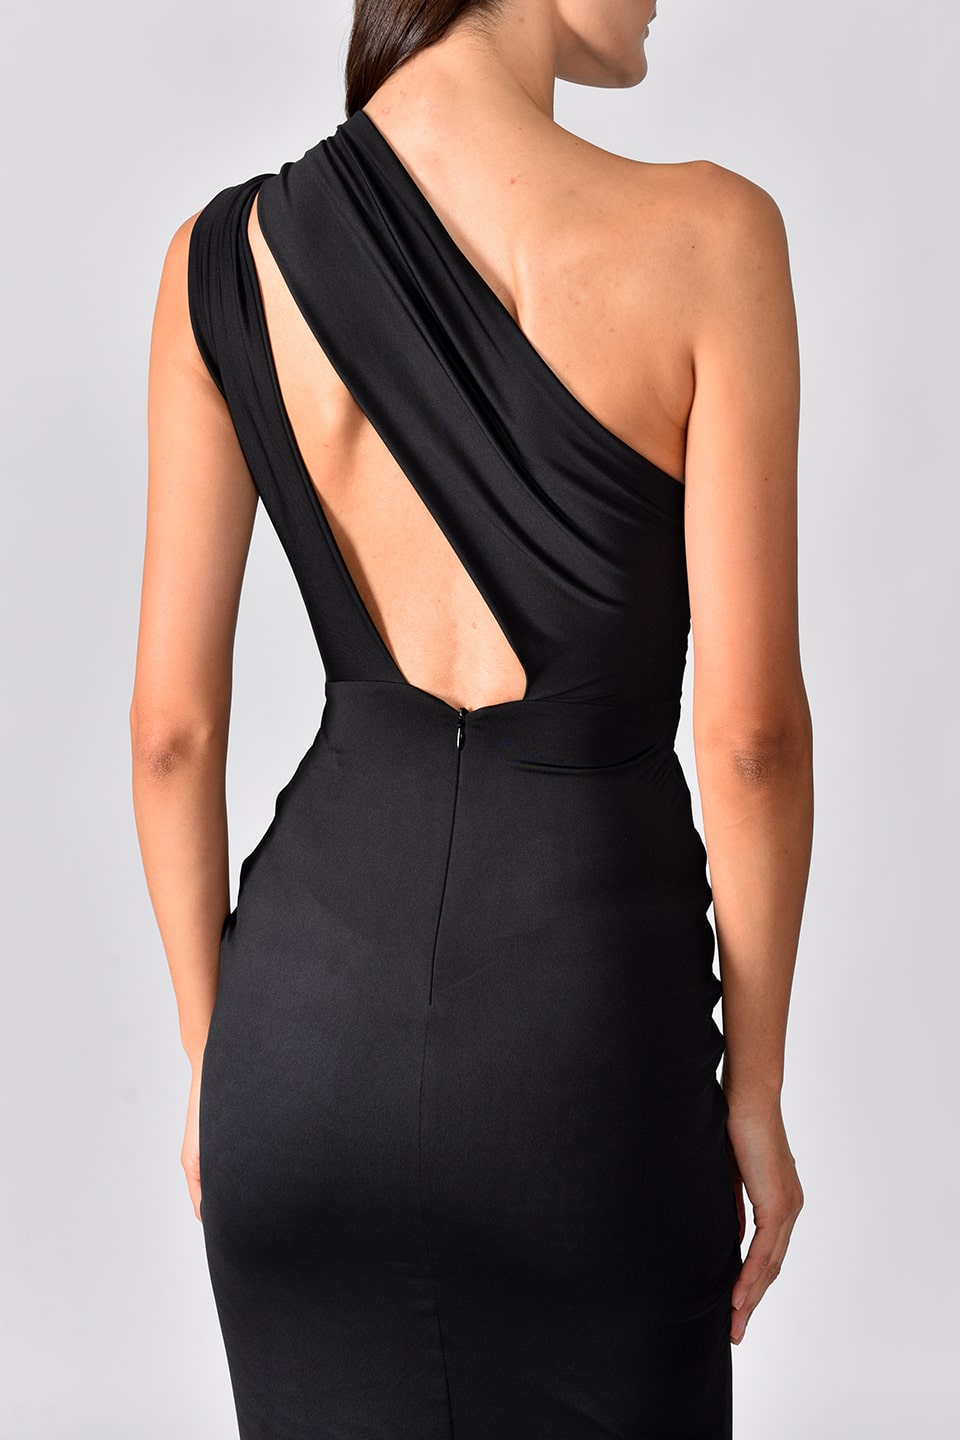 Thumbnail for Product gallery 7, Model wearing black one shoulder dress with long side slit from Hamel fashion designer, details of the back side